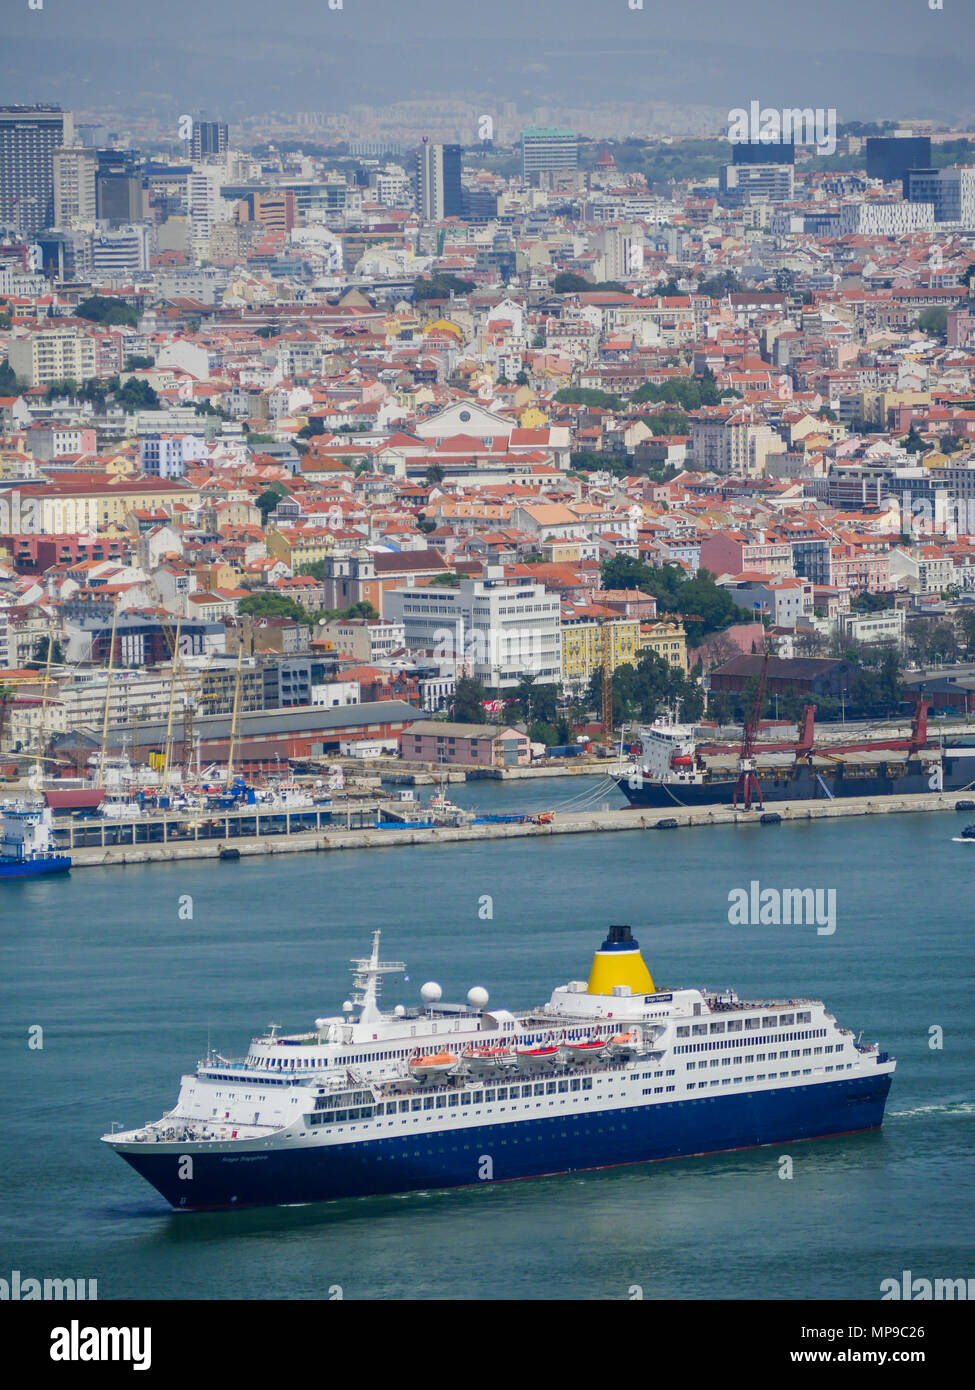 La nave di crociera vela sul fiume Tago a Lisbona, Portogallo Foto stock -  Alamy